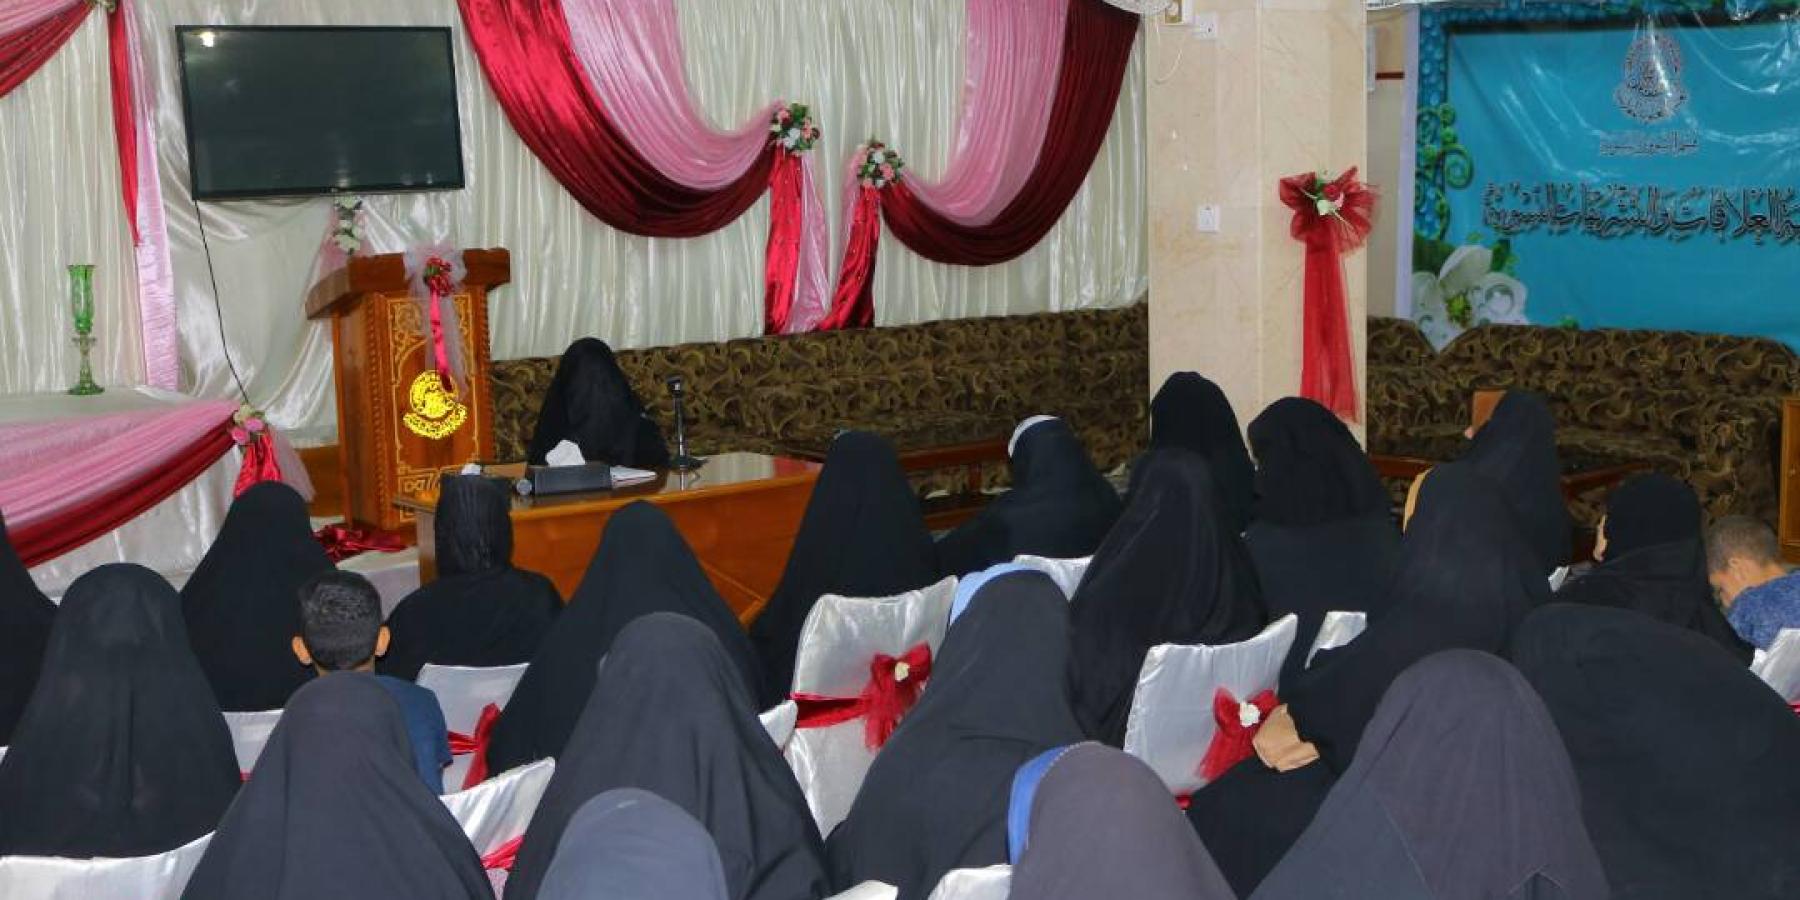 مركز فضة (رضي الله عنها) التابع للقسم النسوي يستمر في استضافة الوفود النسوية المختلفة